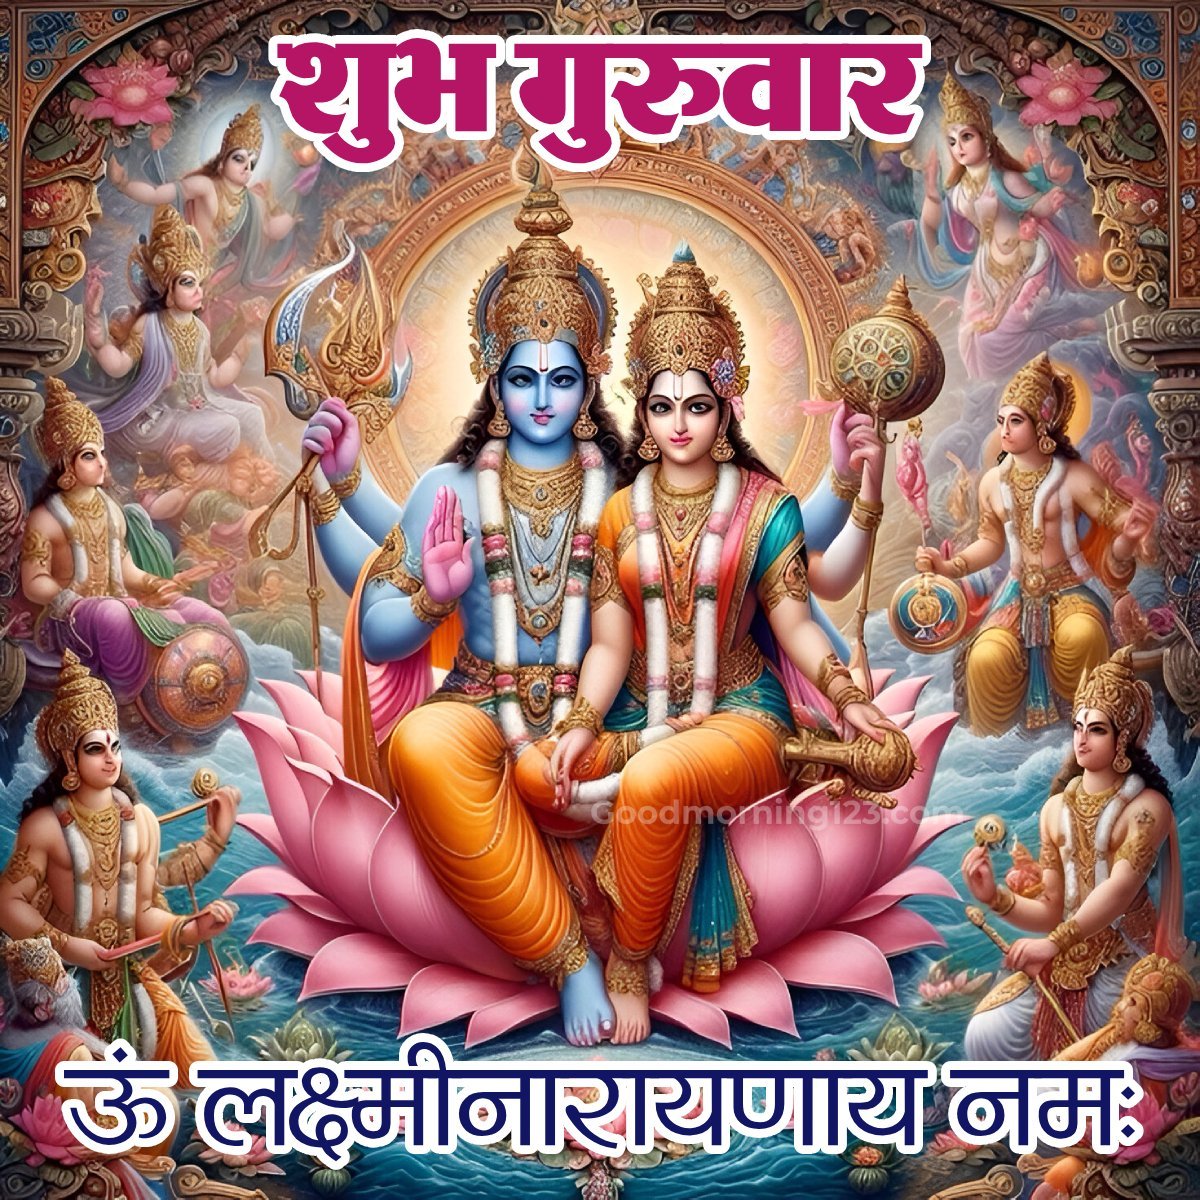 Shubh Guruwar Vishnu Ji And Laxmi Mata Image